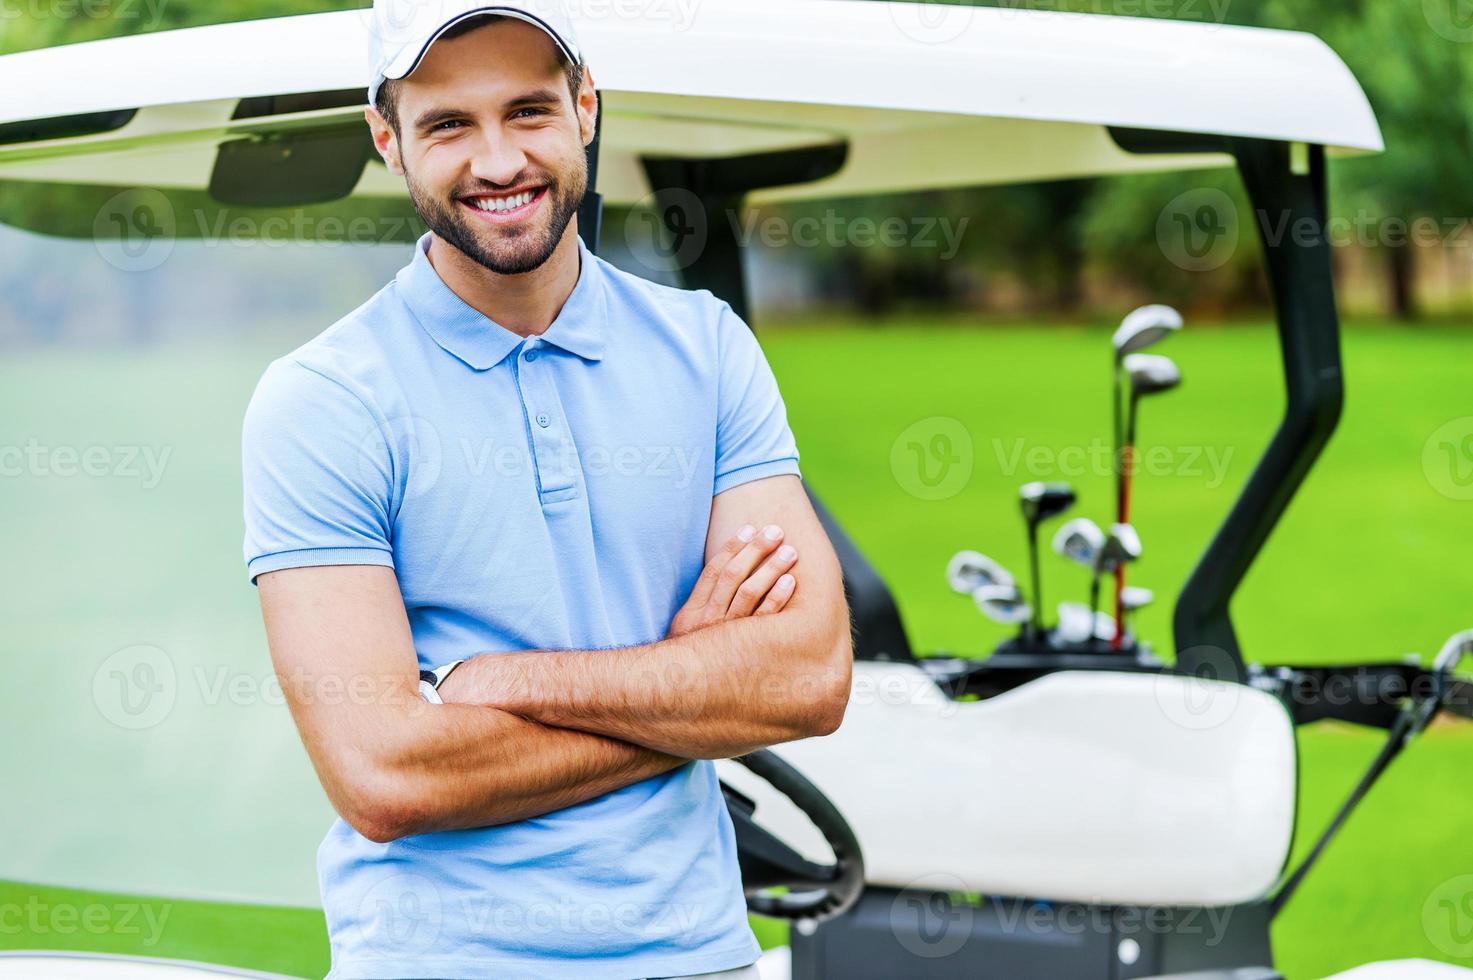 Golf ist mein Lieblingsspiel Gutaussehender junger Mann, der die Arme verschränkt hält und lächelt, während er sich am Golfwagen lehnt, während er auf dem Golfplatz steht foto